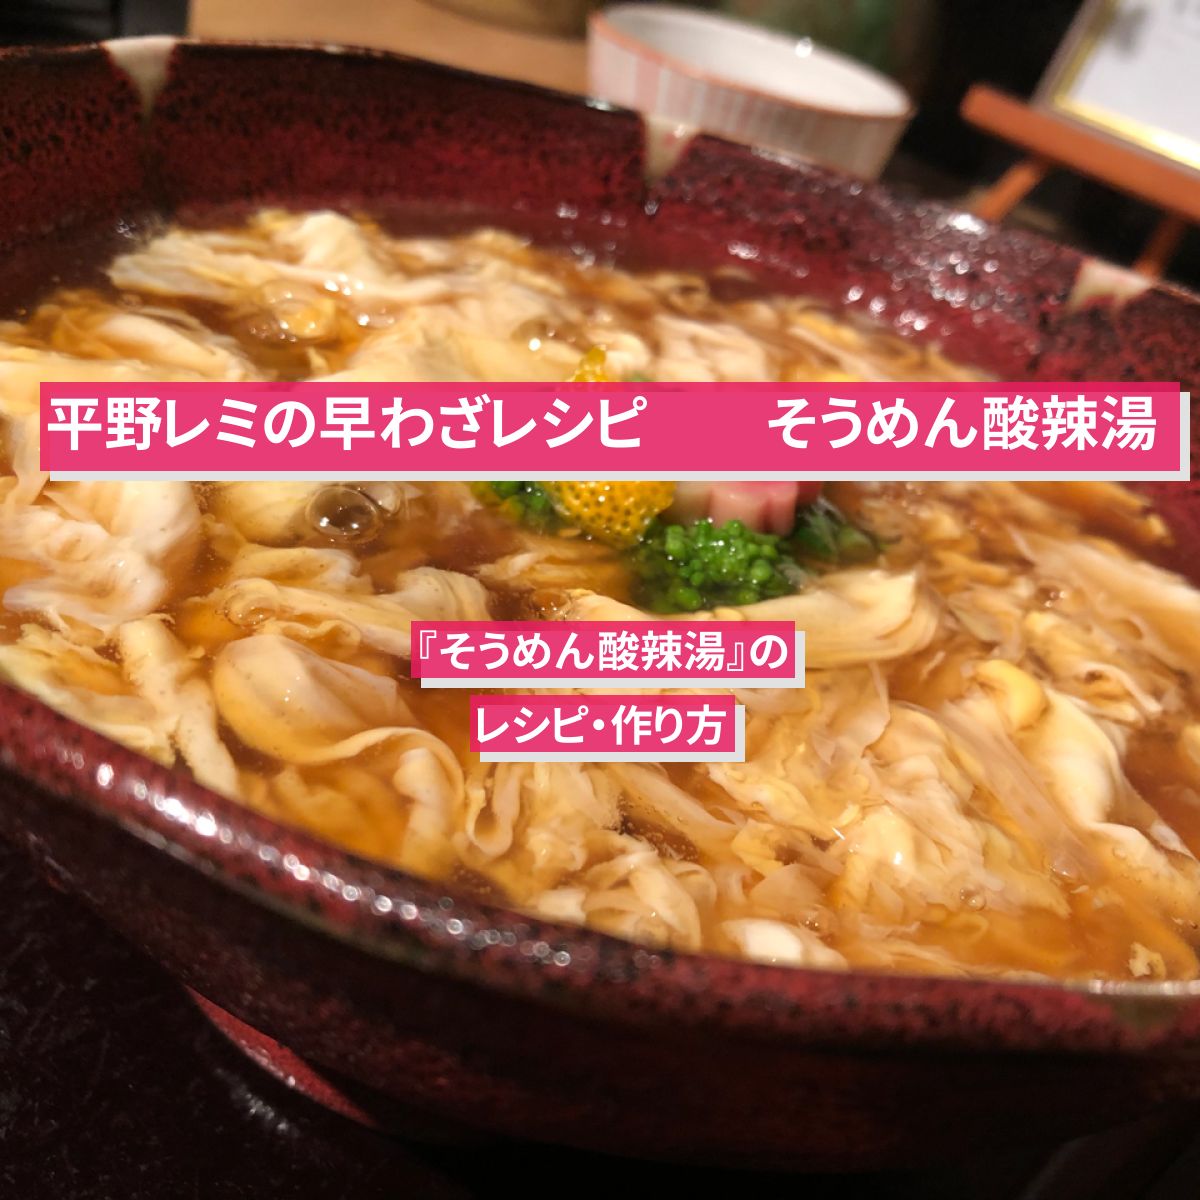 【平野レミの早わざレシピ】『そうめん酸辣湯』のレシピ・作り方